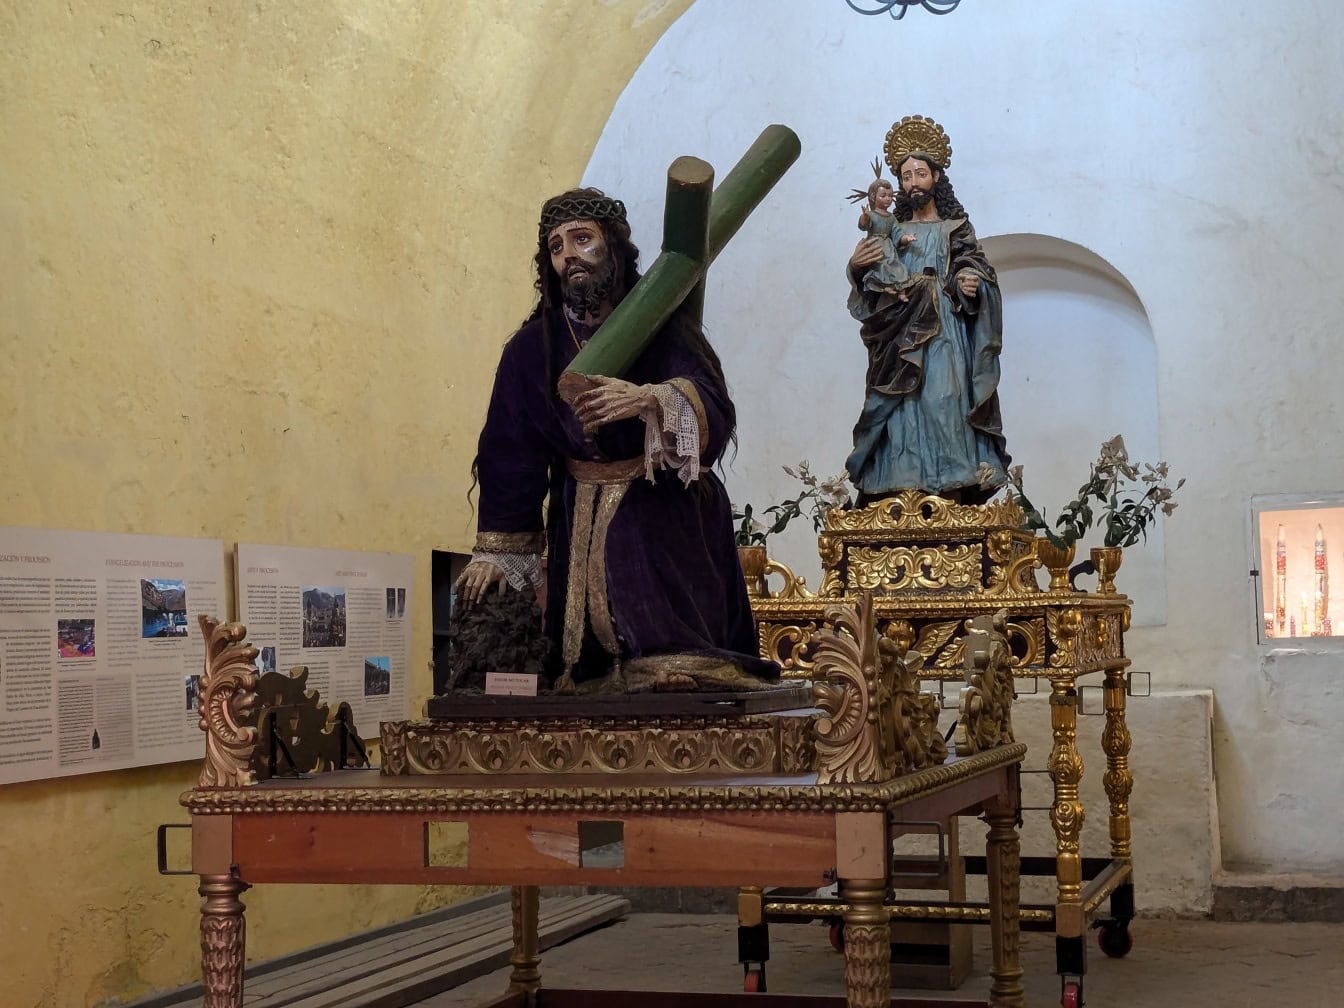 Socha Ježíše Krista Nazaretského nesoucí kříž v klášteře Santa Catalina v Arequipě, Peru